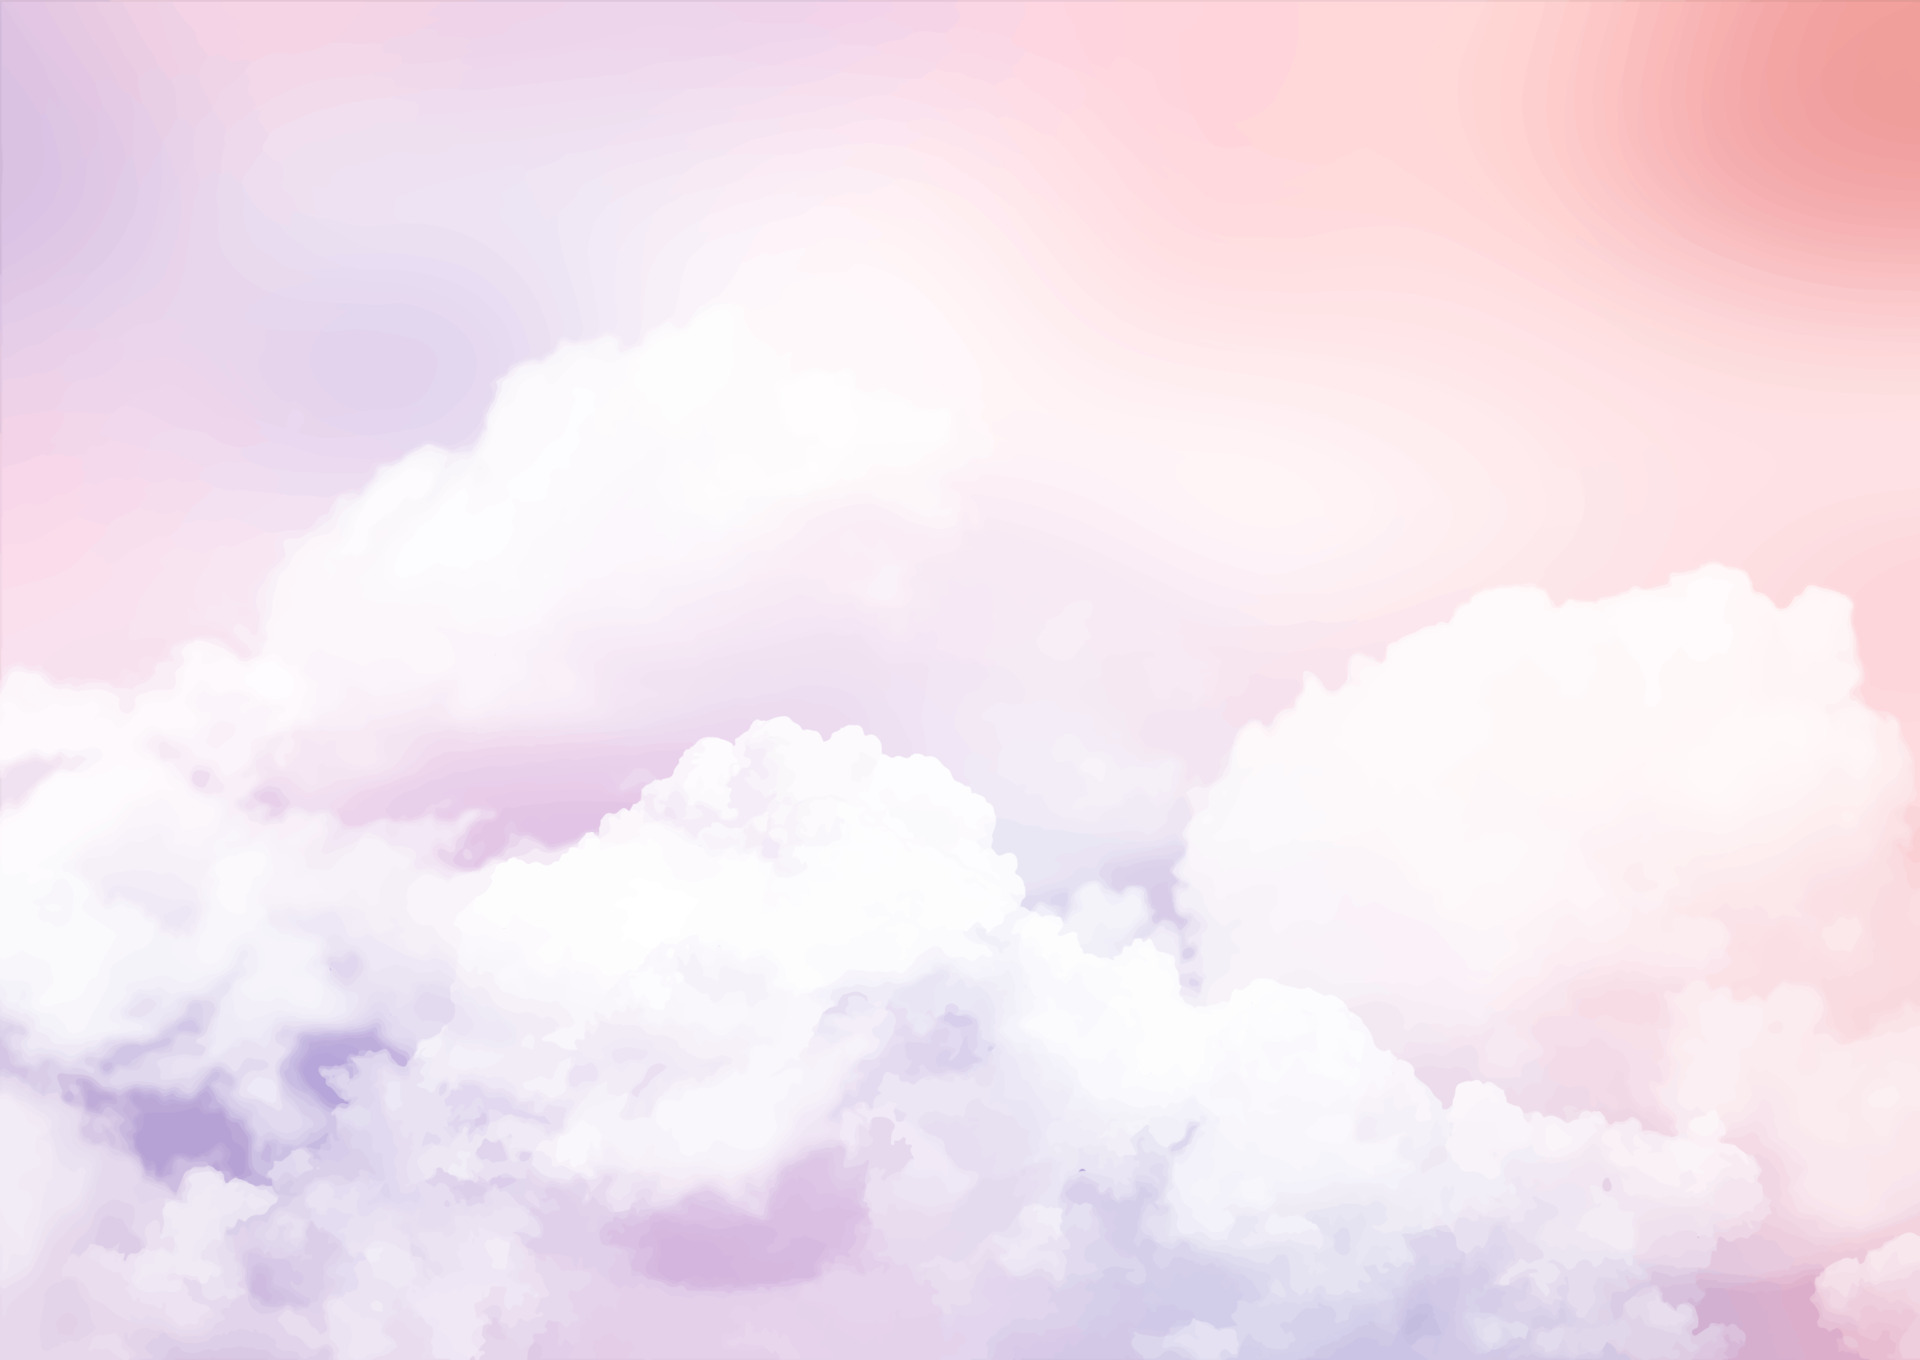 Đồ họa mây hồng phấn miễn phí sẽ giúp cho bạn thỏa sức sáng tạo và tạo ra những tác phẩm độc đáo của riêng mình. Những hình ảnh mang tông màu pastel này sẽ giúp cho những thiết kế của bạn trở nên đẹp mắt và ấn tượng hơn.